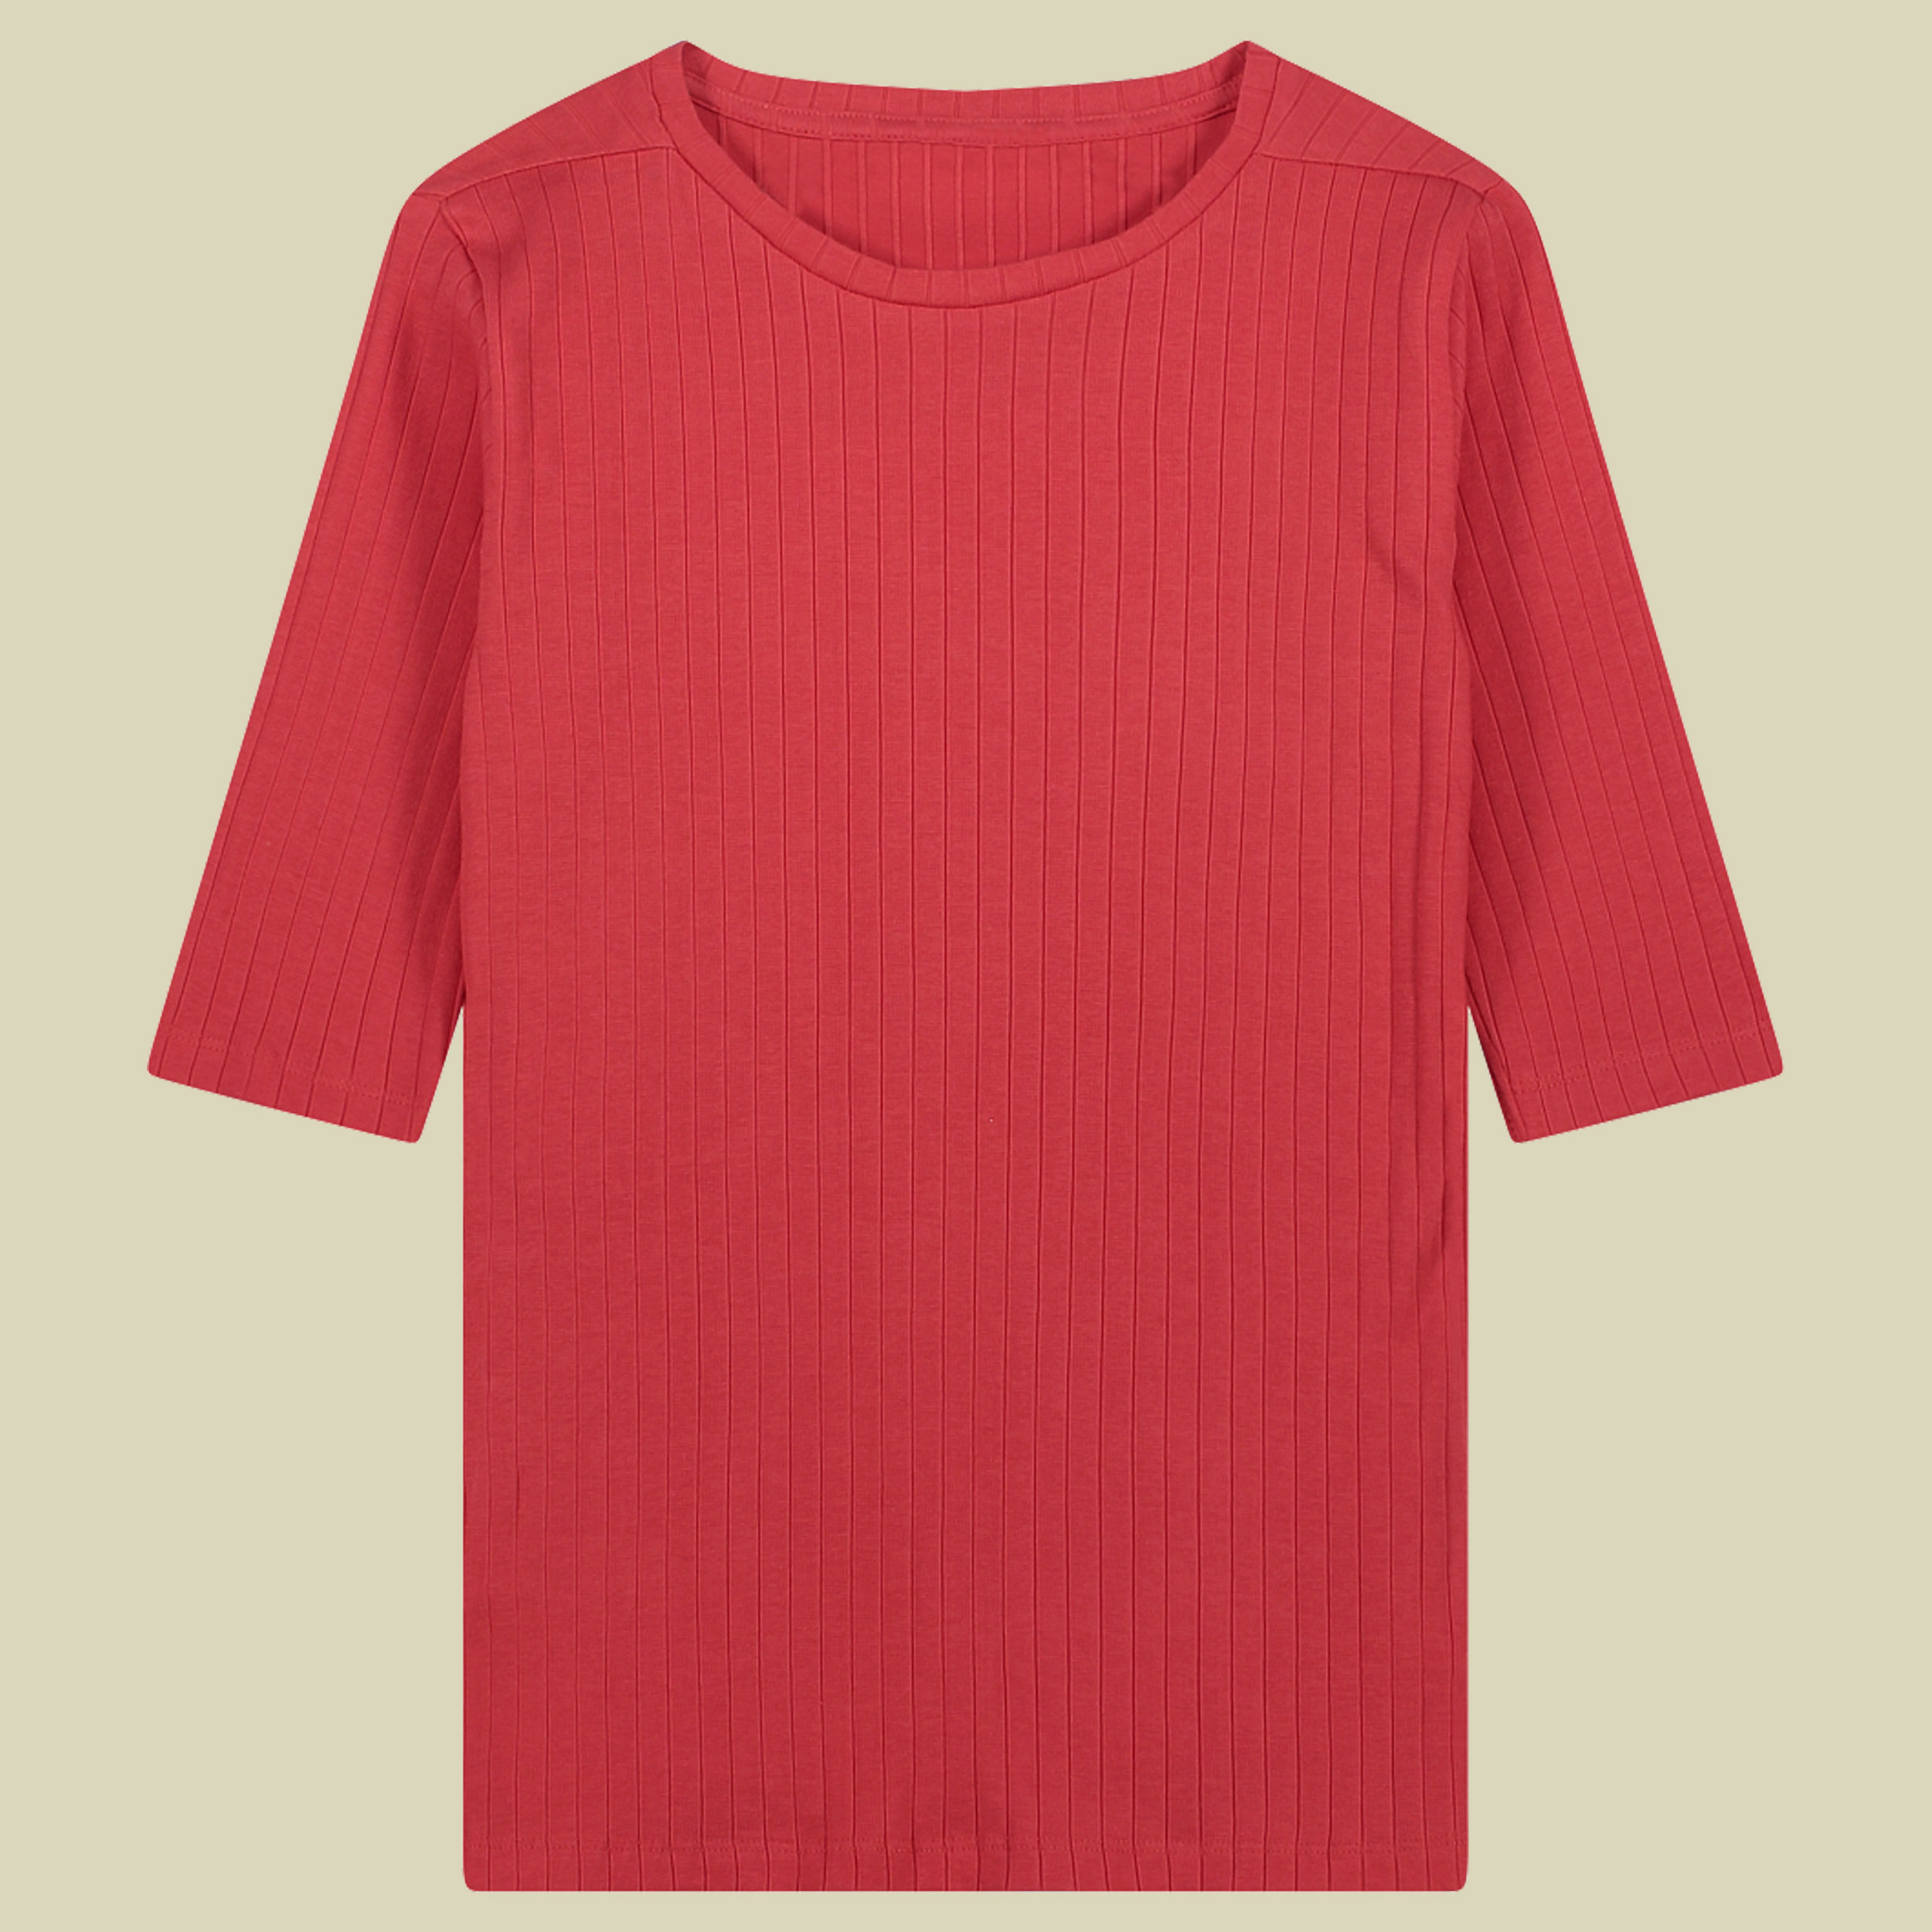 Aysen Ribbed T-Shirt Women 36 rot - rose rouge